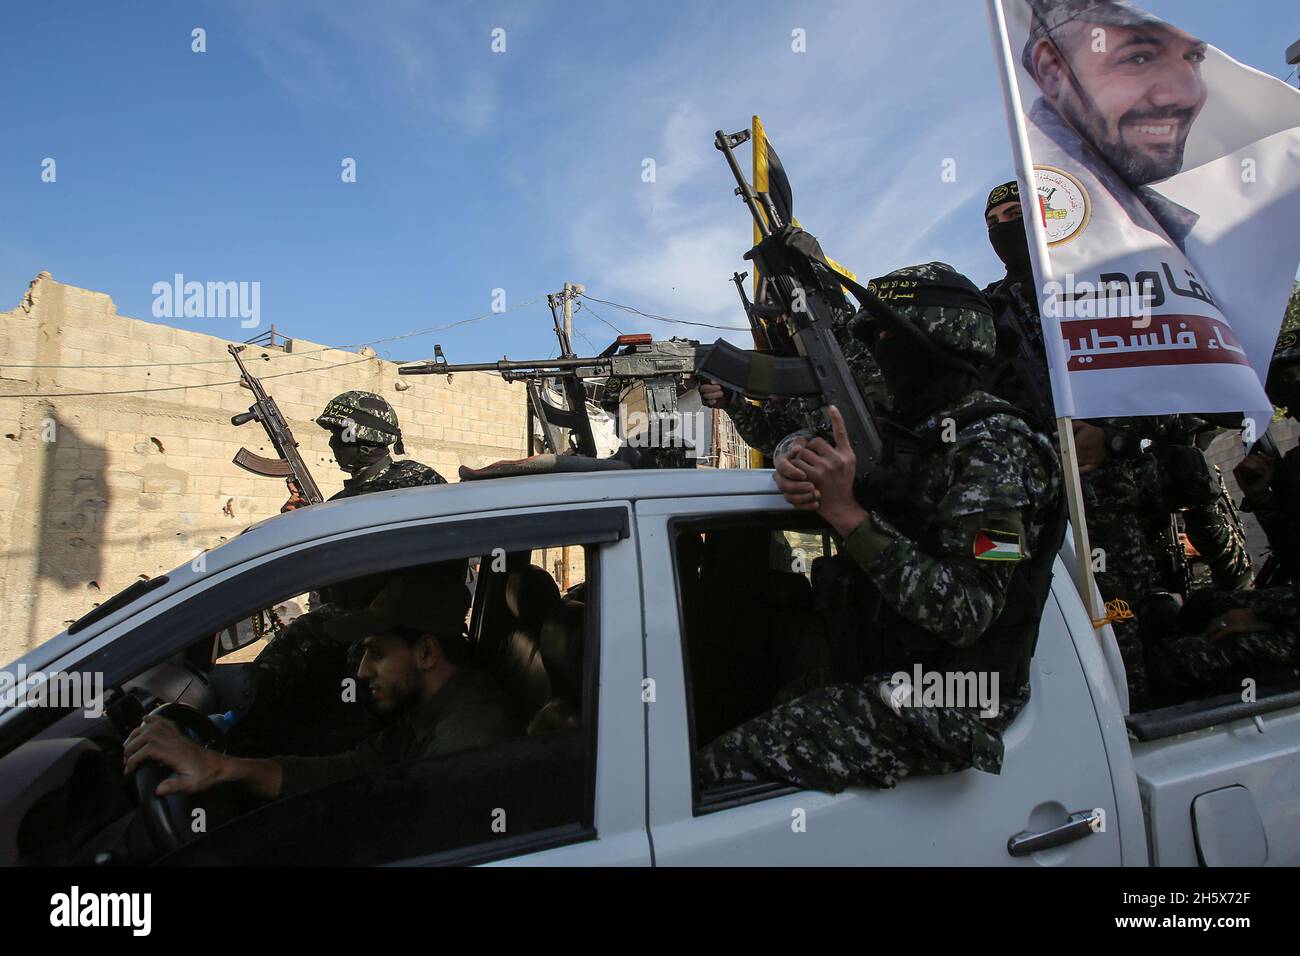 Gli attivisti islamici palestinesi della Jihad prendono parte a uno spettacolo militare anti-Israele, nel campo di al-Shujaiya ad est di Gaza, il 12 novembre 2021. Foto Stock